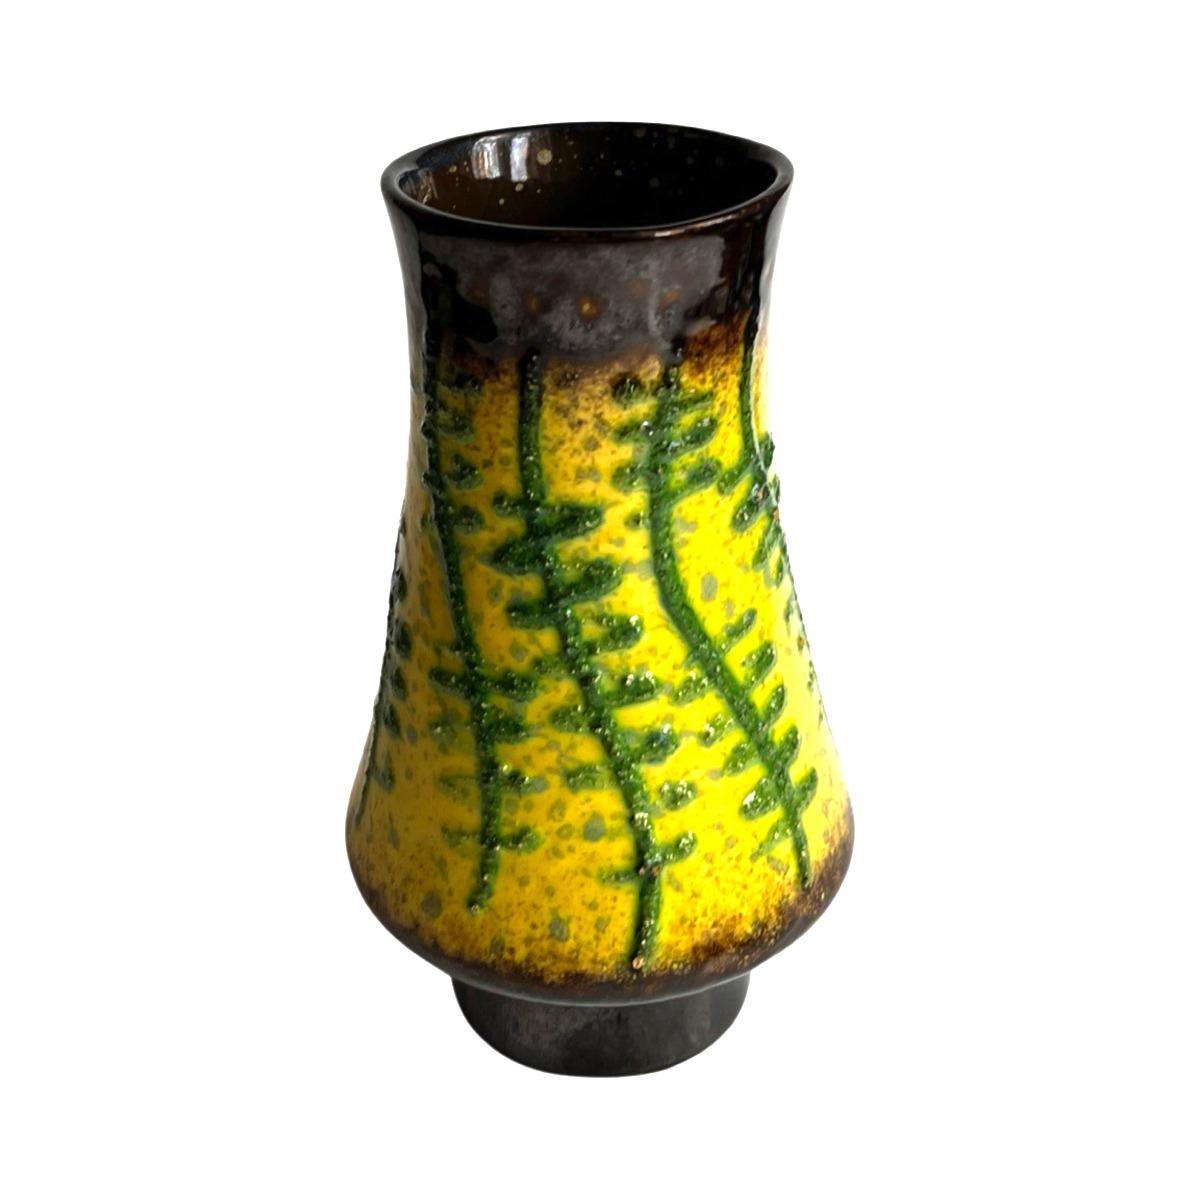 Wazon ceramiczny fat lava Strehla Keramik, Niemcy lata 60. nr. 6